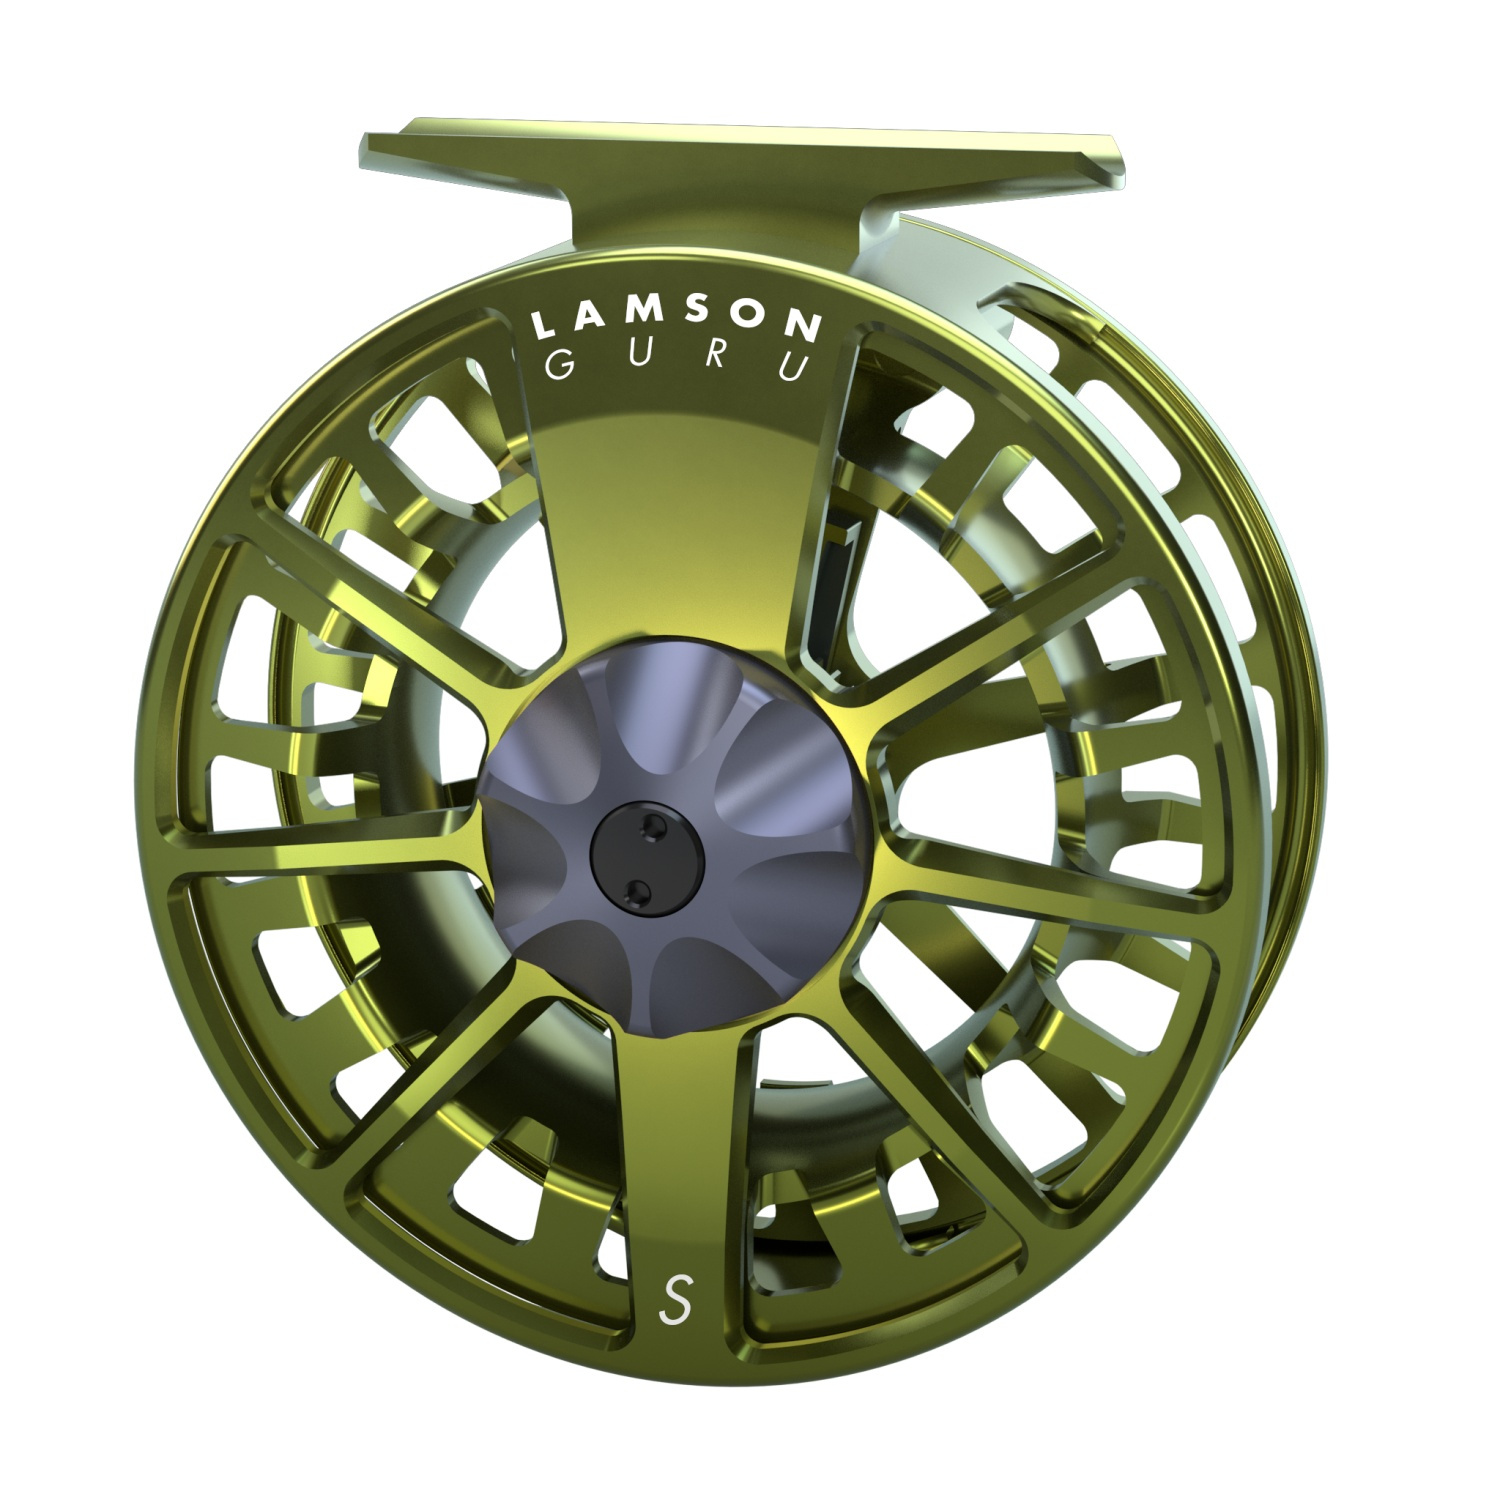 Lamson Guru S-Series Fly Reel Olive Green